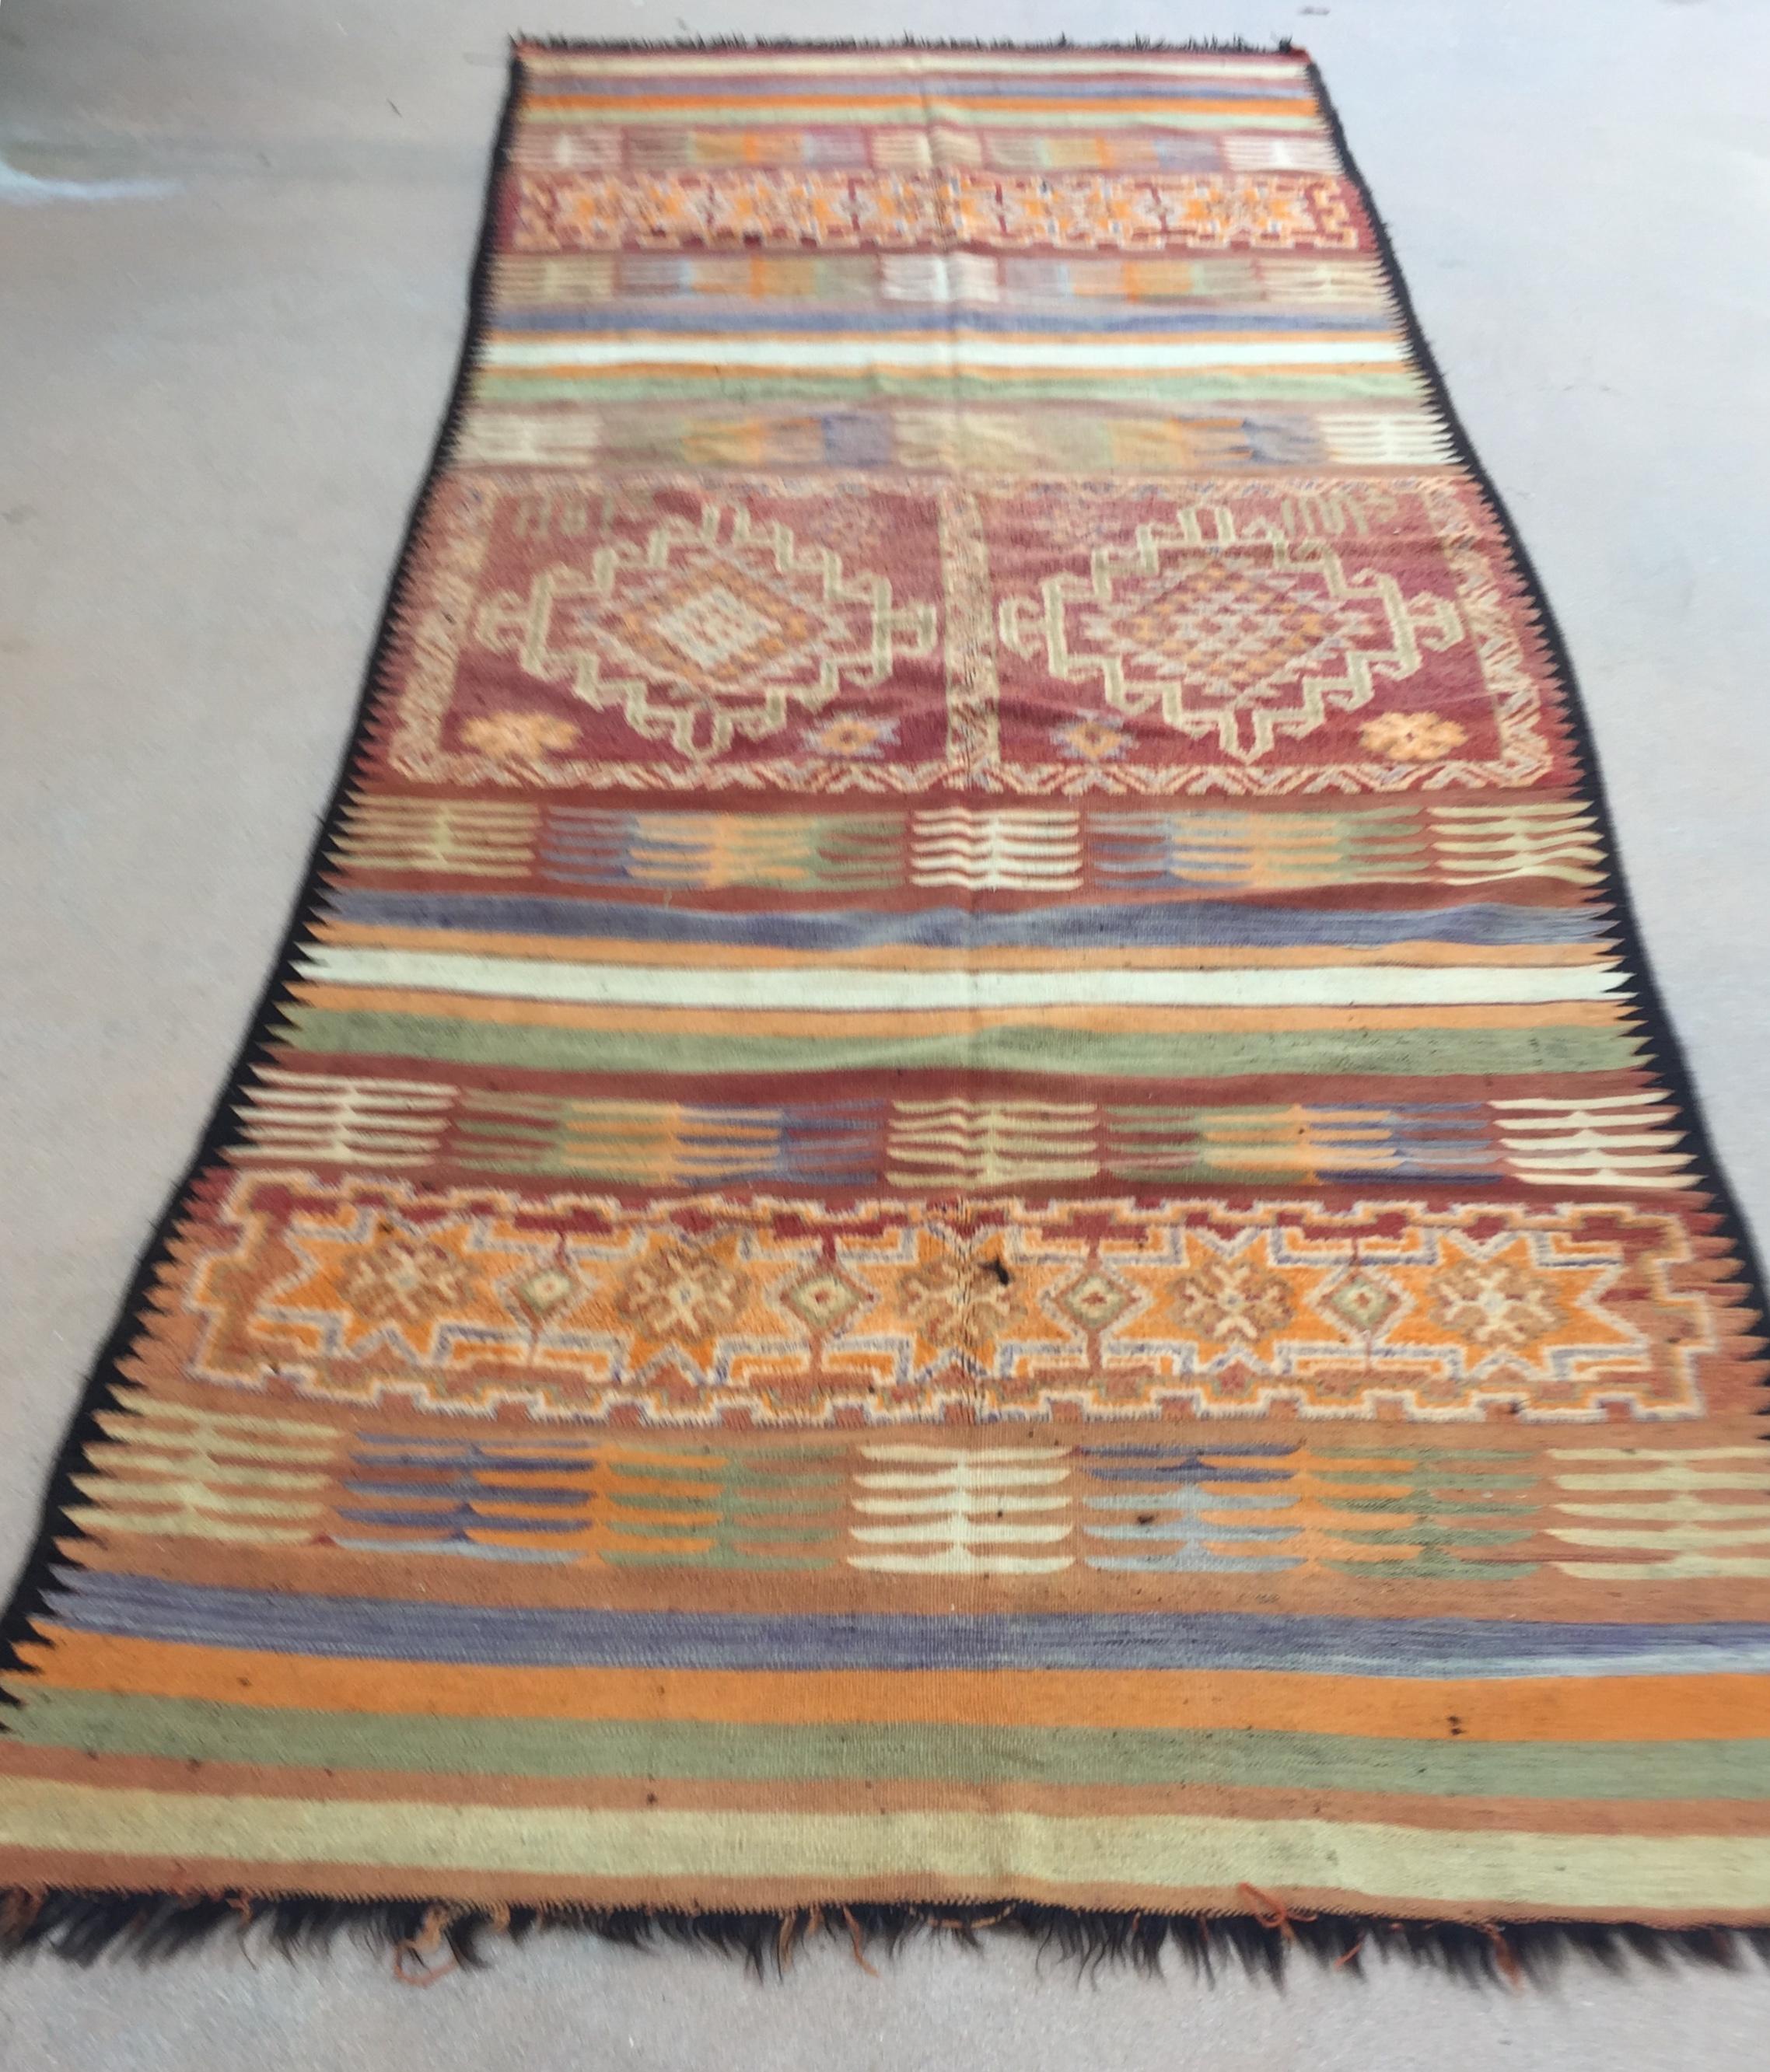 Grand tapis berbère tribal marocain authentique des années 1960 tissé à la main, joliment vieilli avec des cors vifs. Tapis marocain vintage tissé à la main par les tribus berbères du sud du Maroc avec des motifs géométriques tribaux traditionnels.